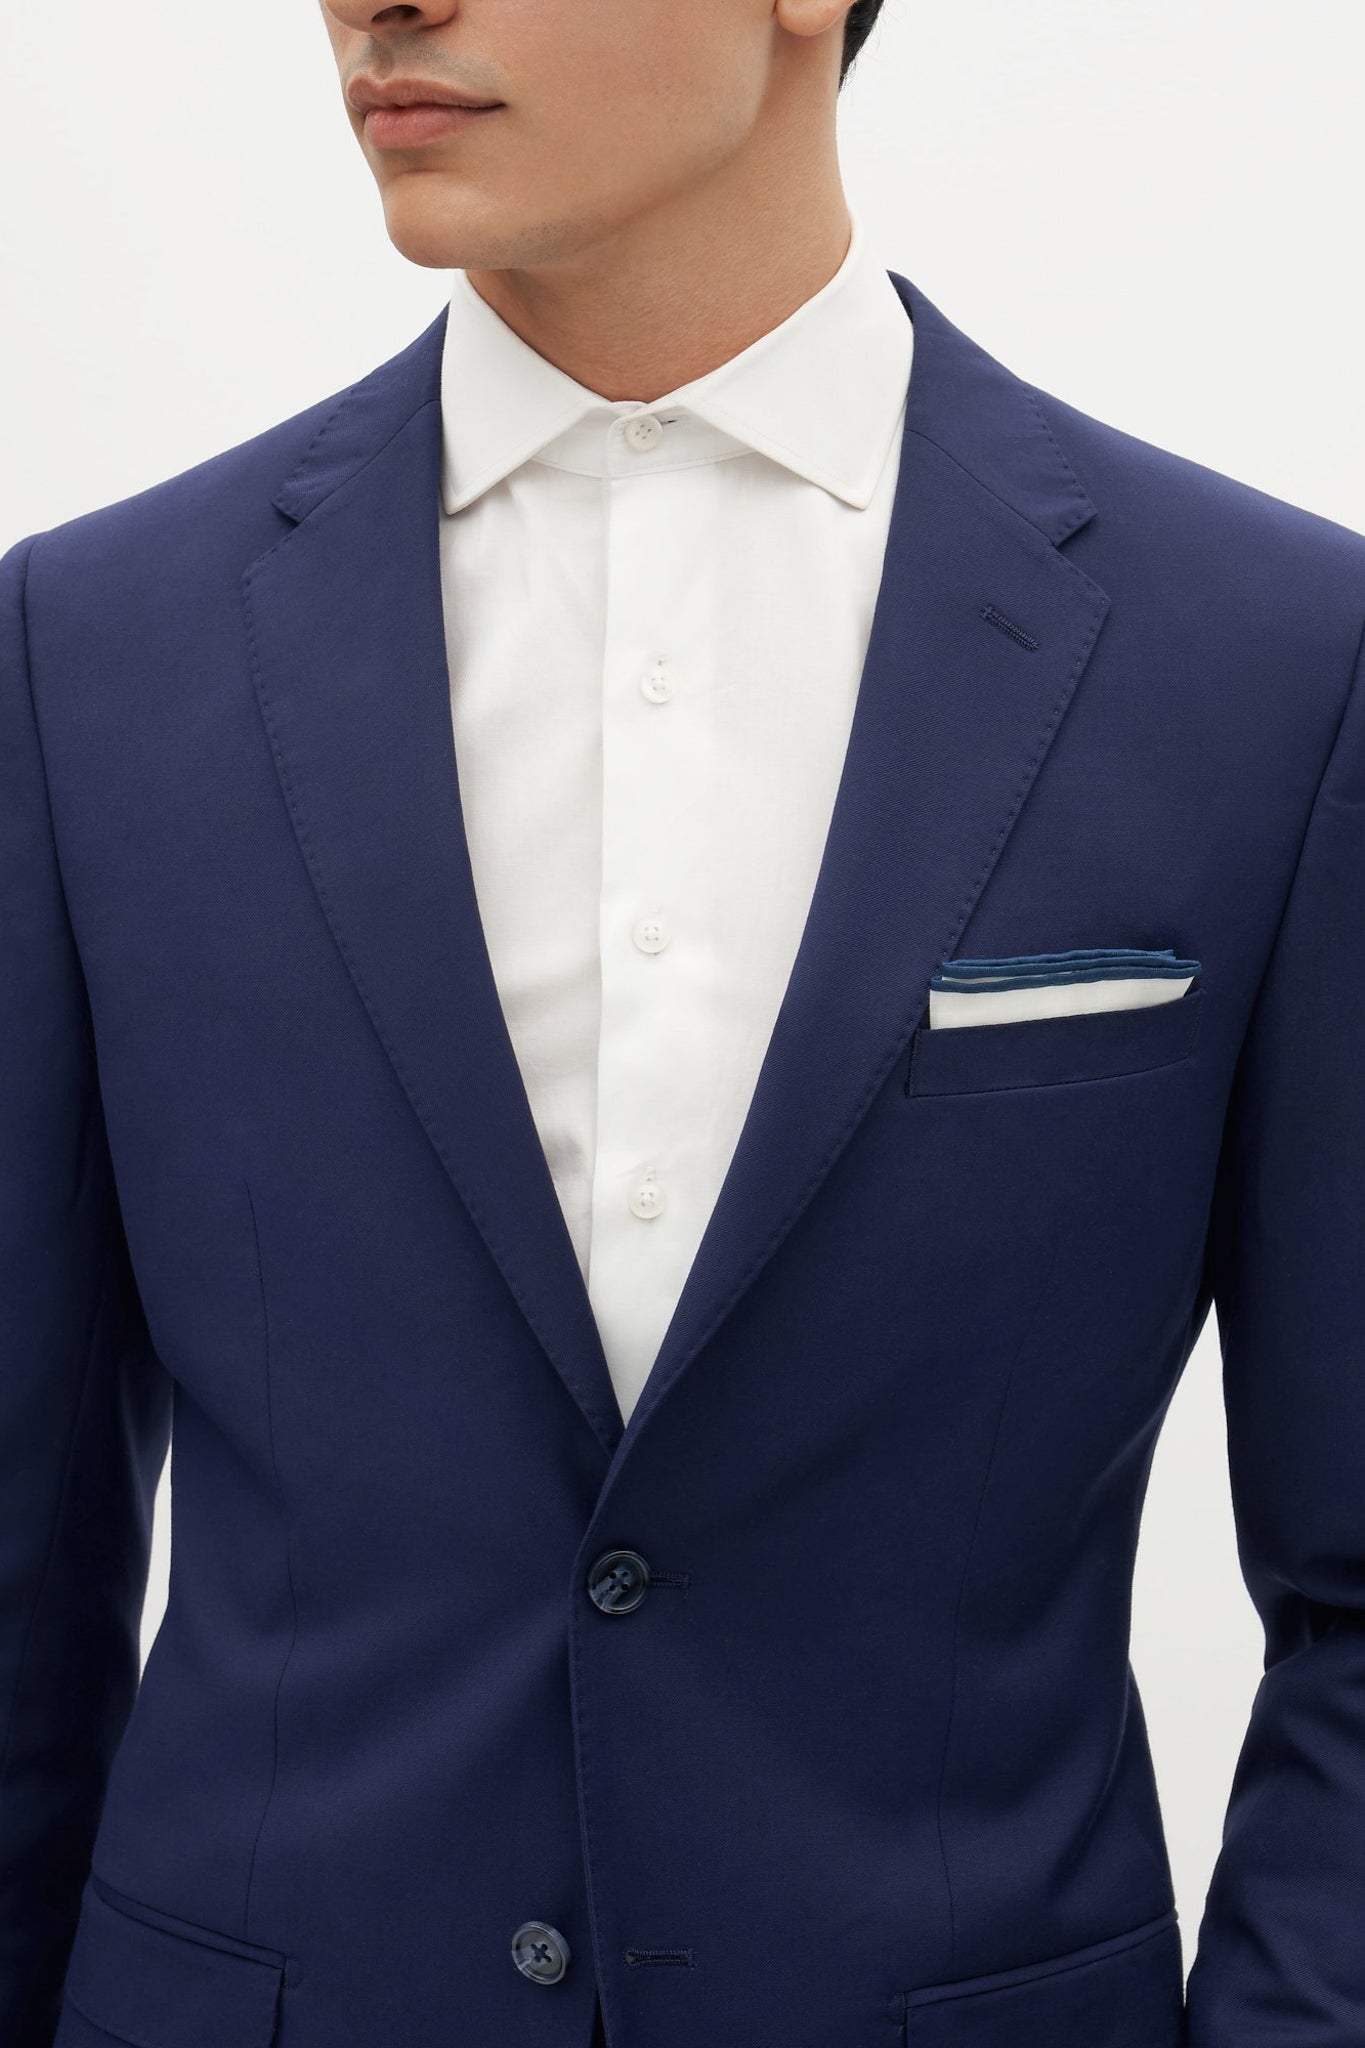 Brilliant Blue Groomsmen Suit by SuitShop, front view